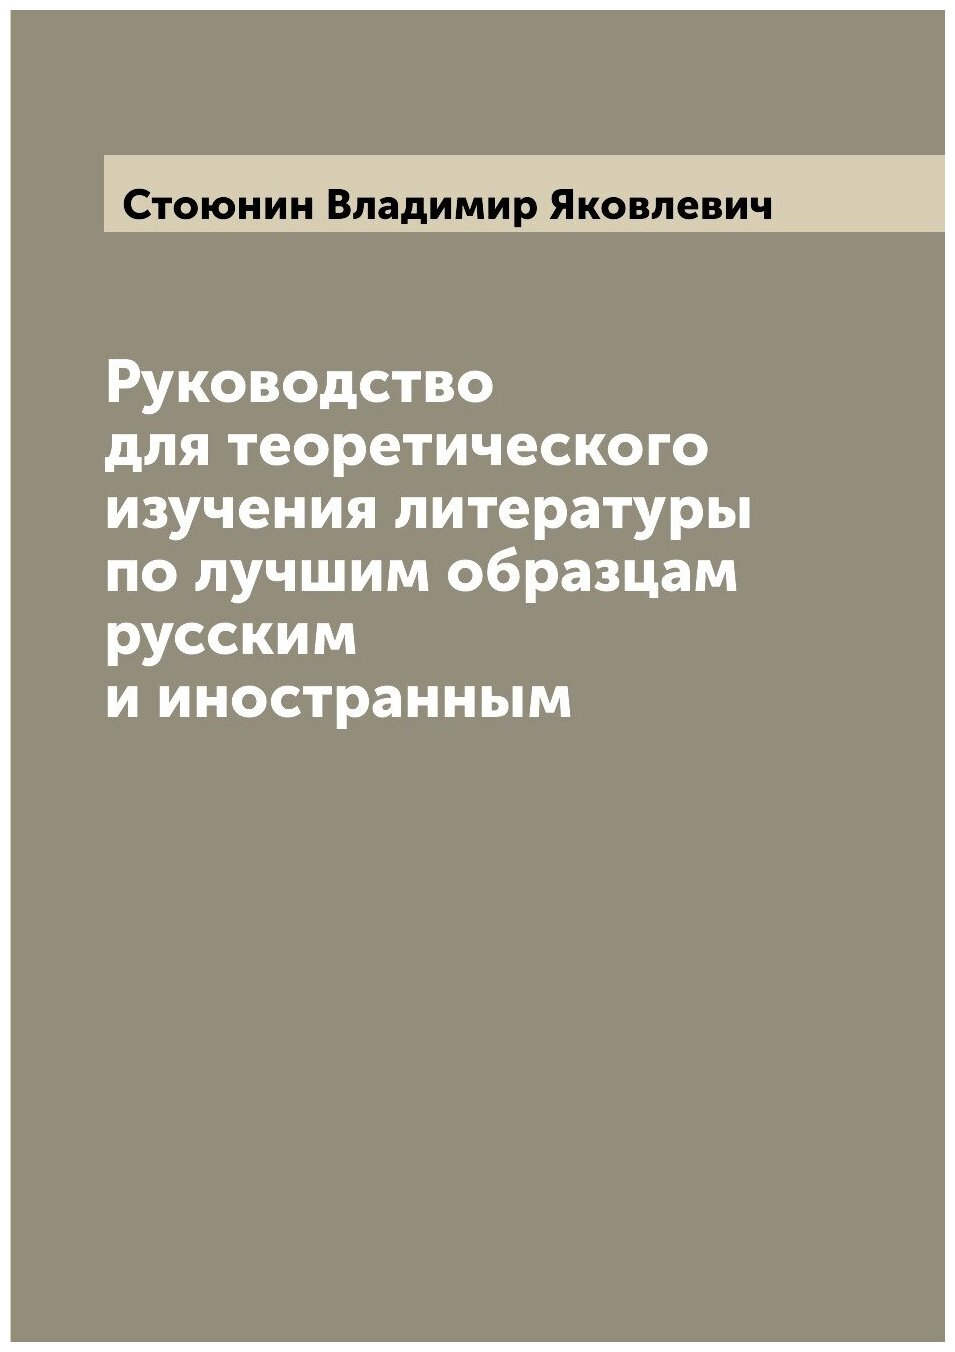 Руководство для теоретического изучения литературы по лучшим образцам русским и иностранным